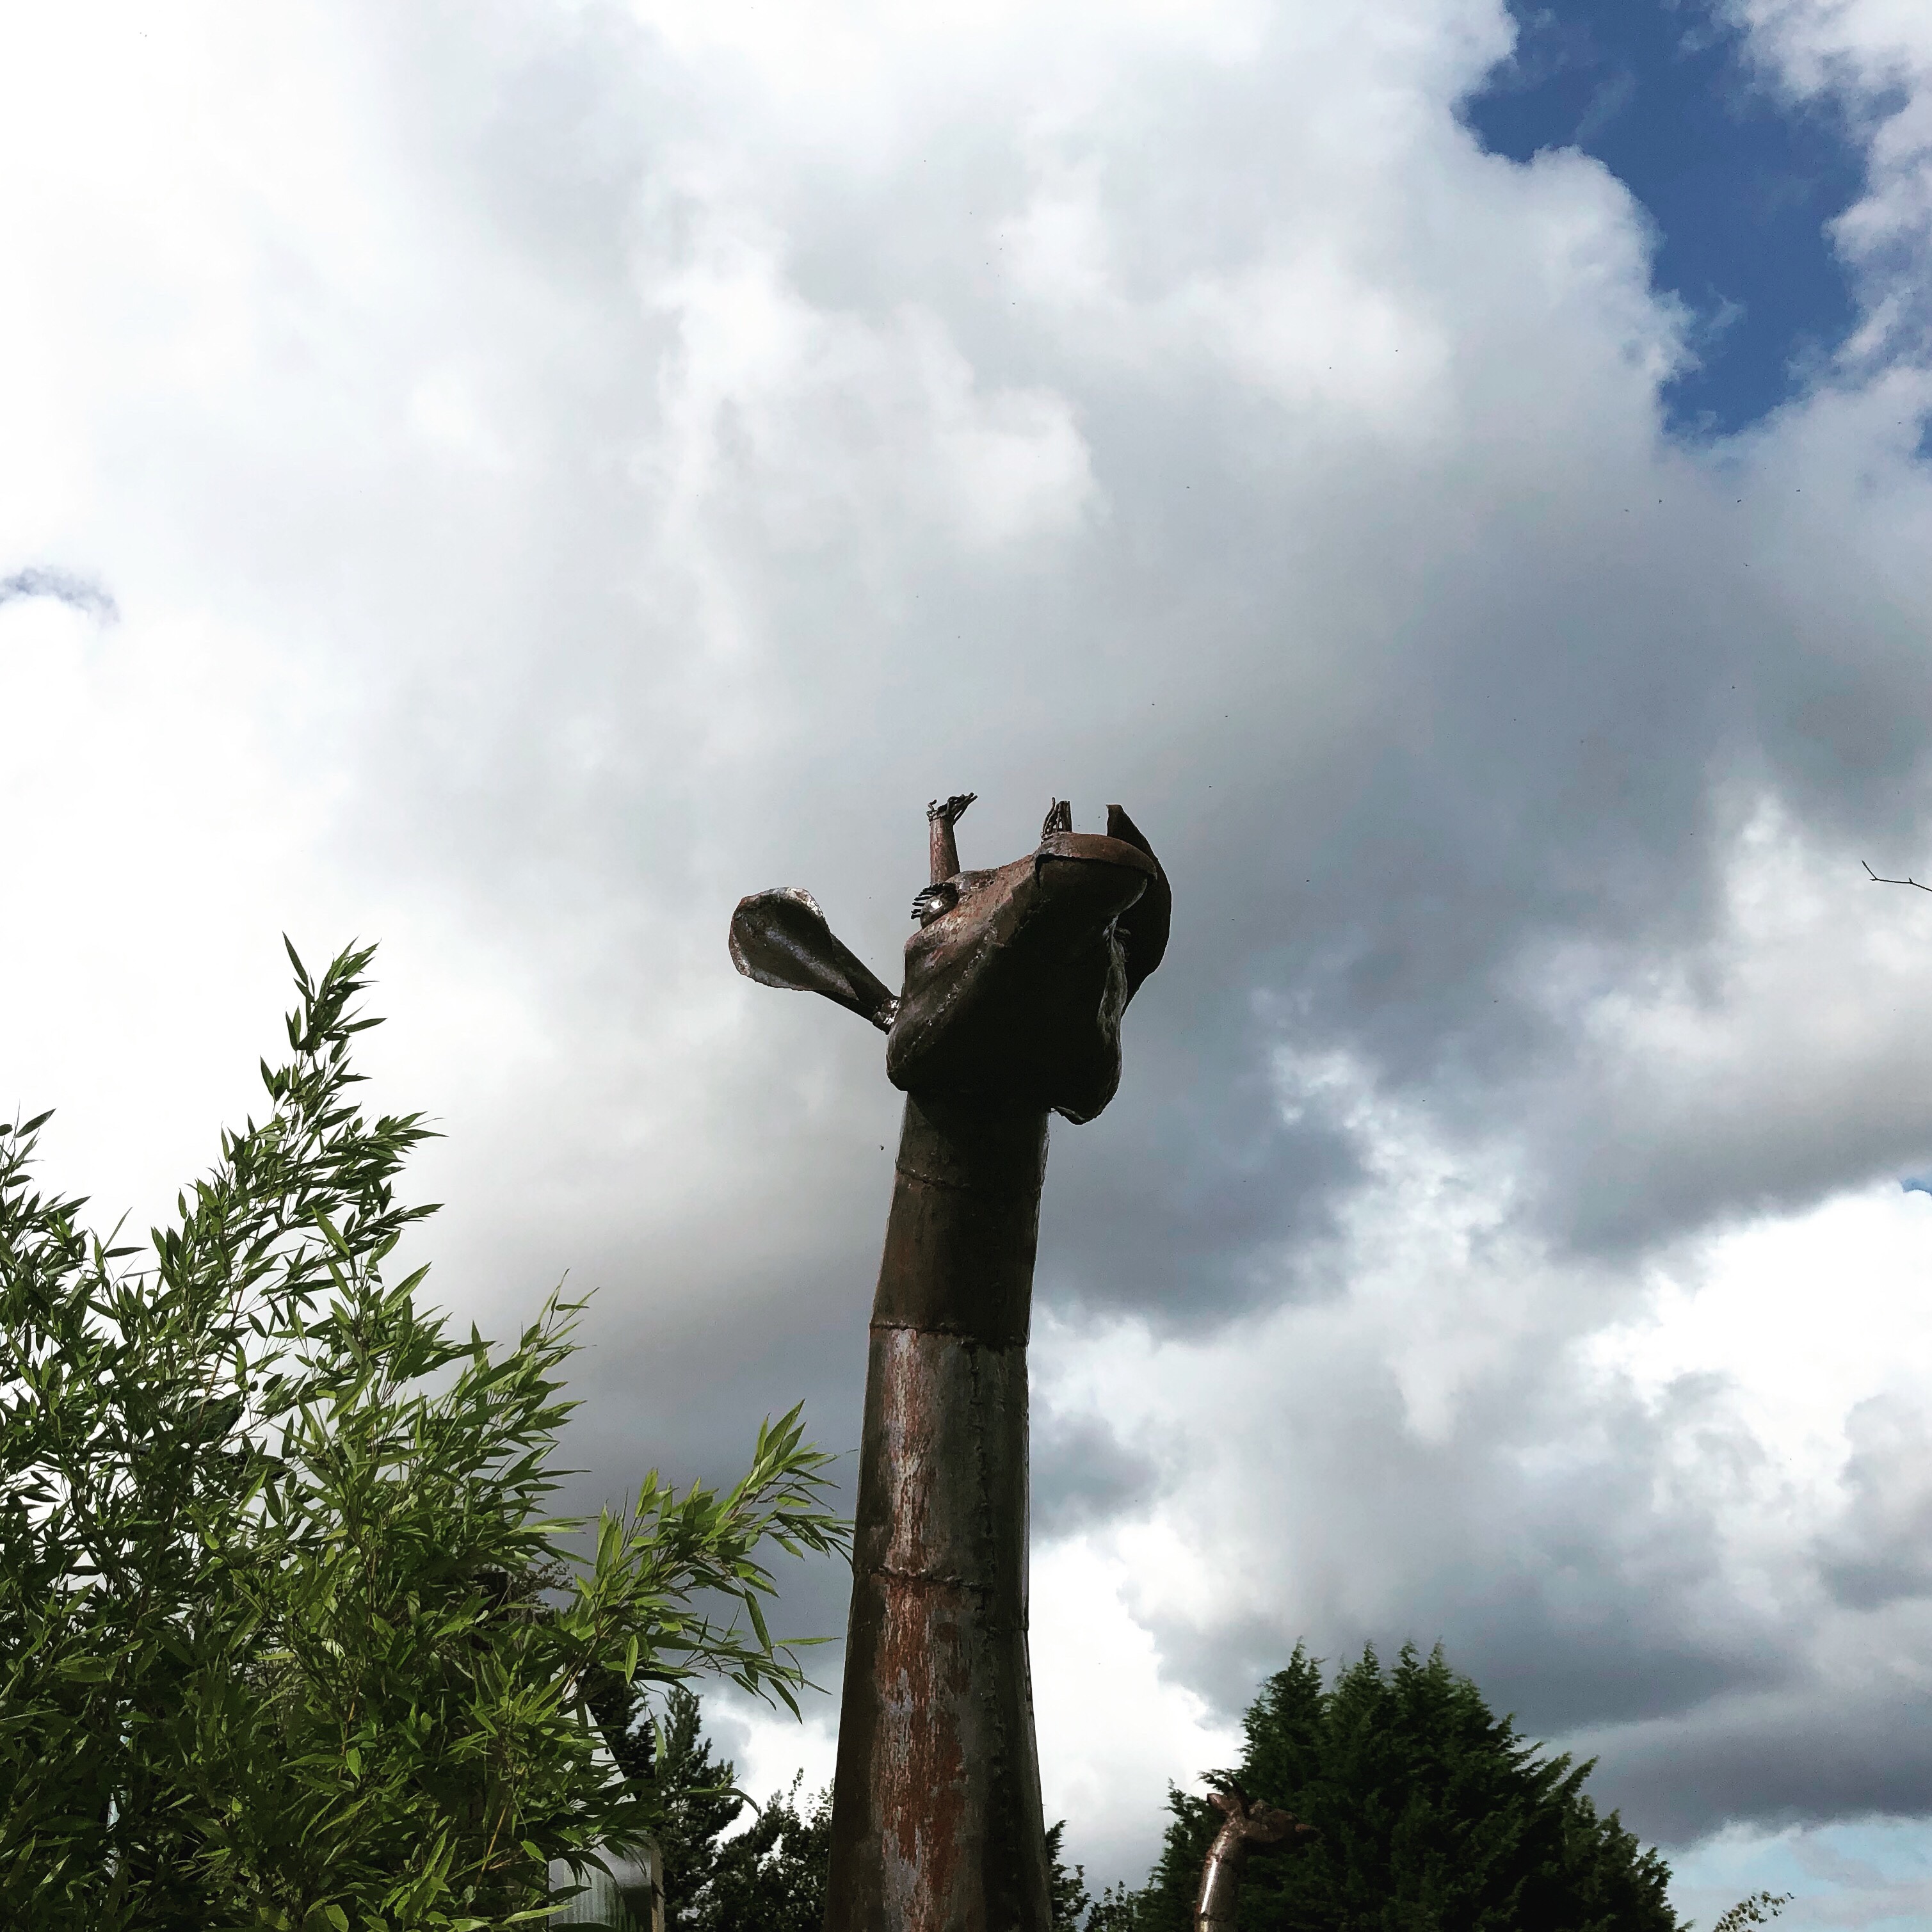 A giraffe made of iron at cherry hill garden centre near Middlesbrough